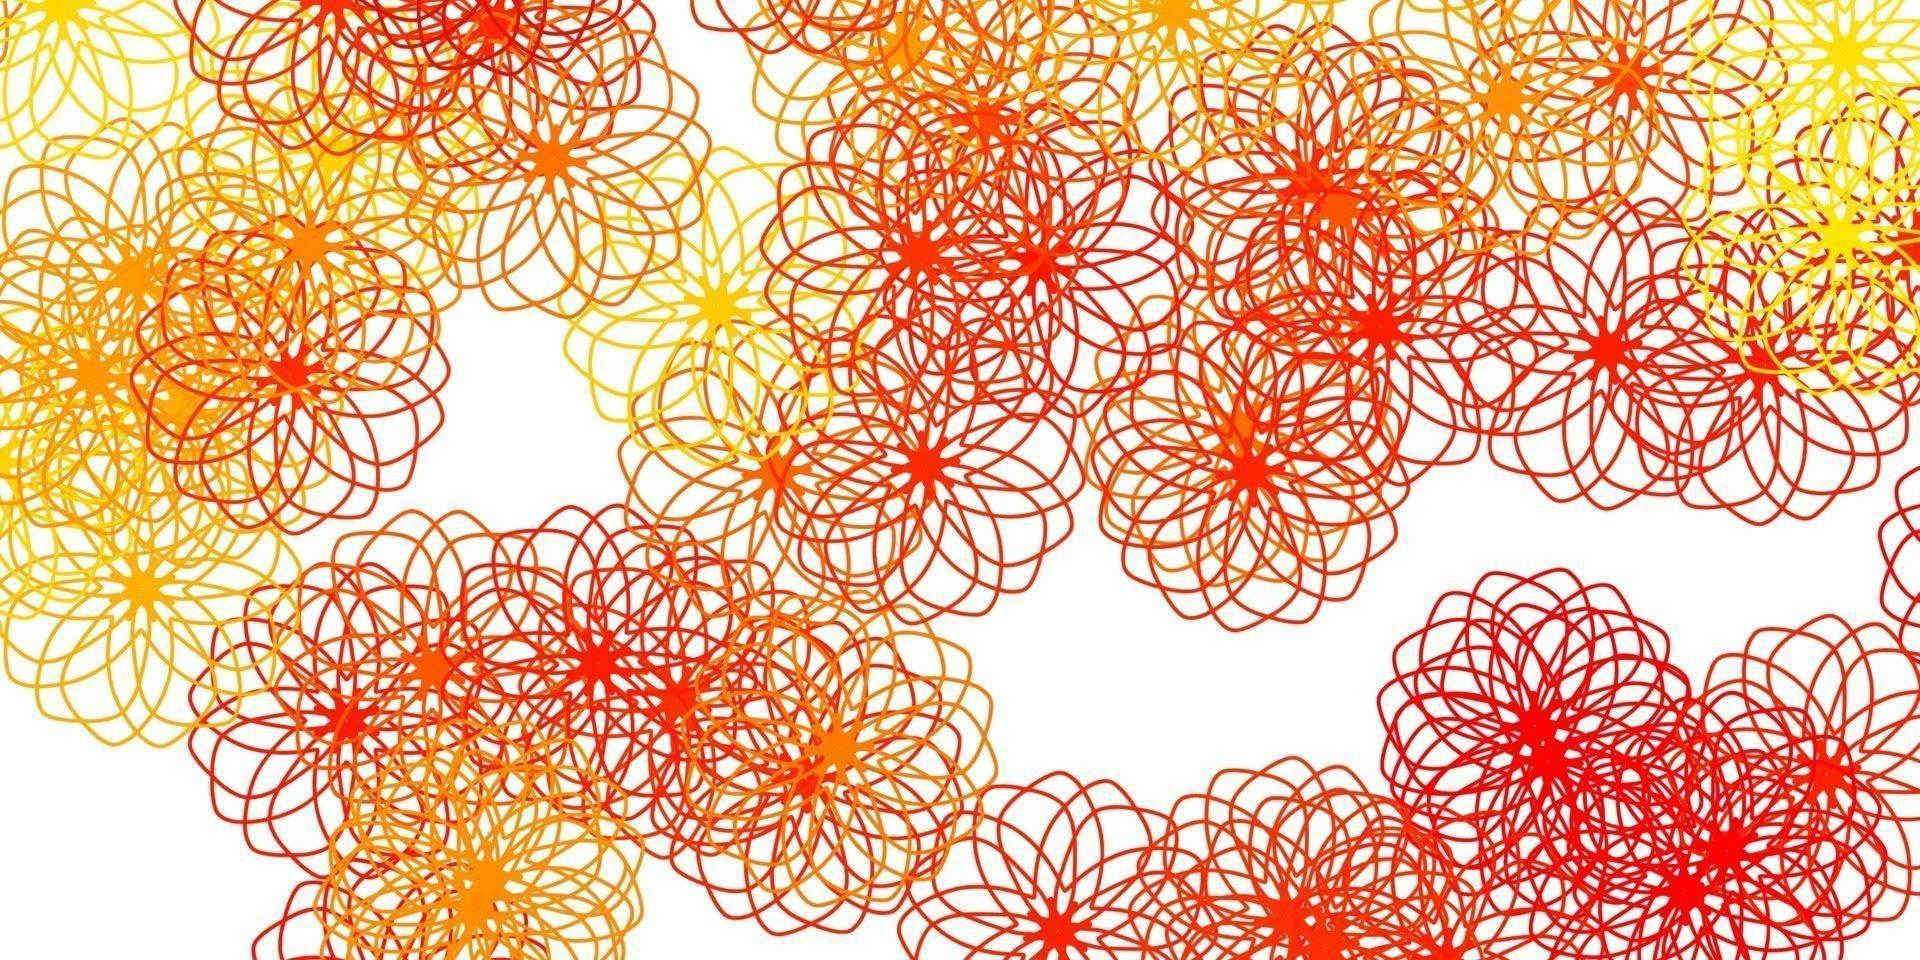 patrón de vector naranja claro con esferas.